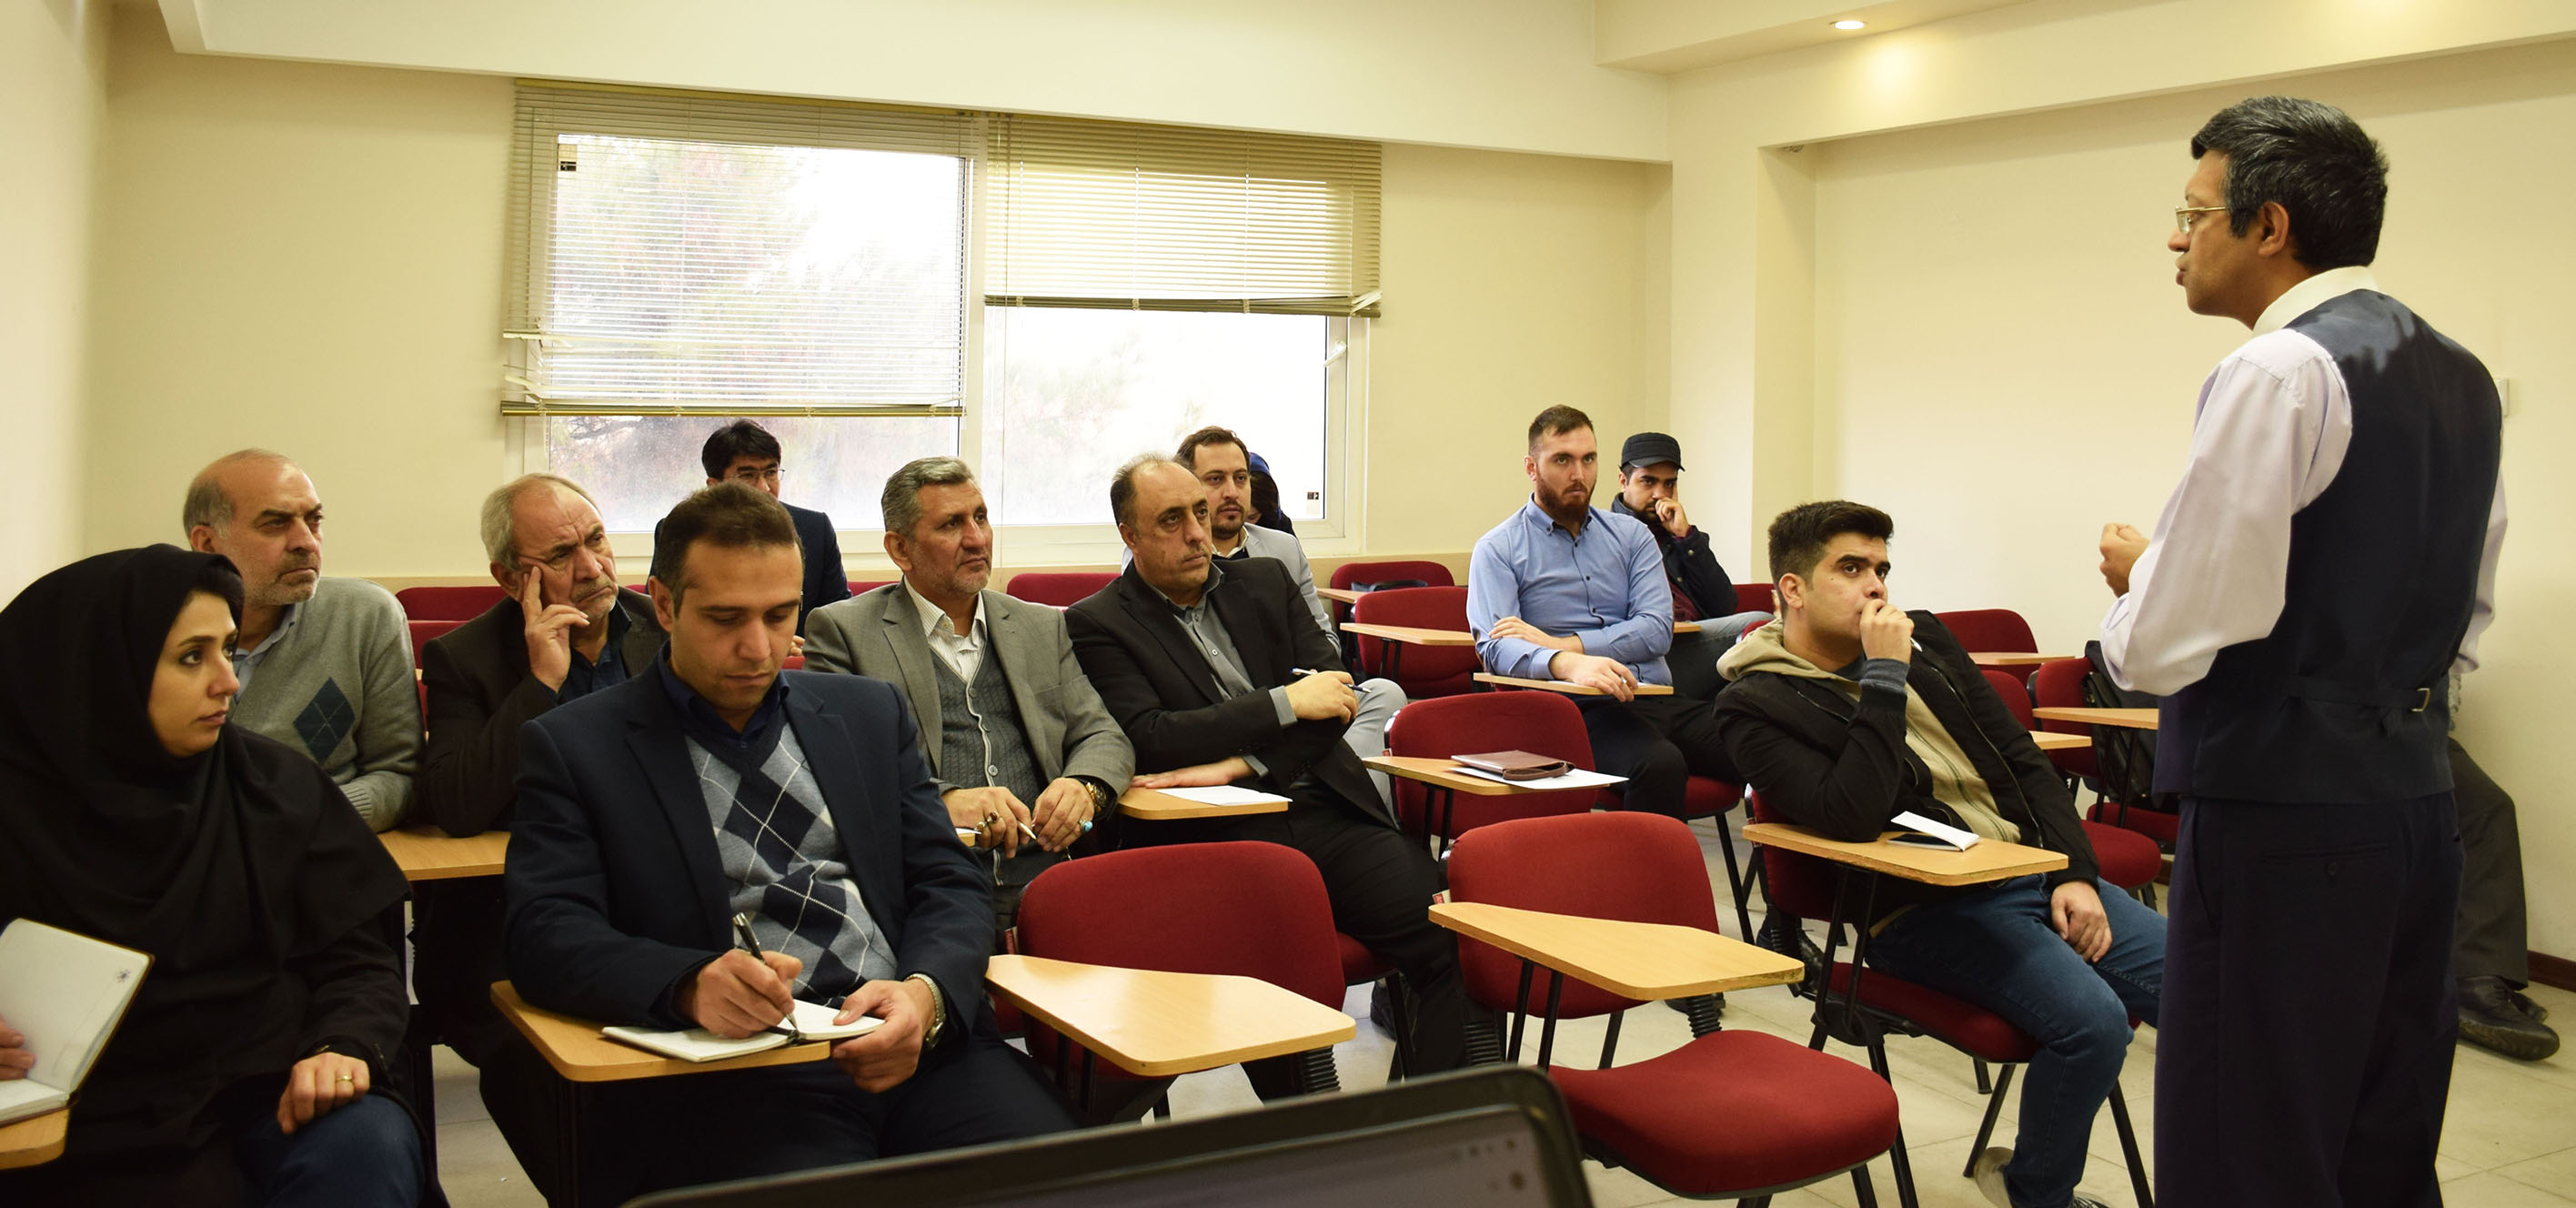 کارگاه آموزشی تجارت الکترونیک و آشنایی با کسب و کارهای اینترنتی ویژه تجار افغانستانی در اتاق مشهد برگزار شد